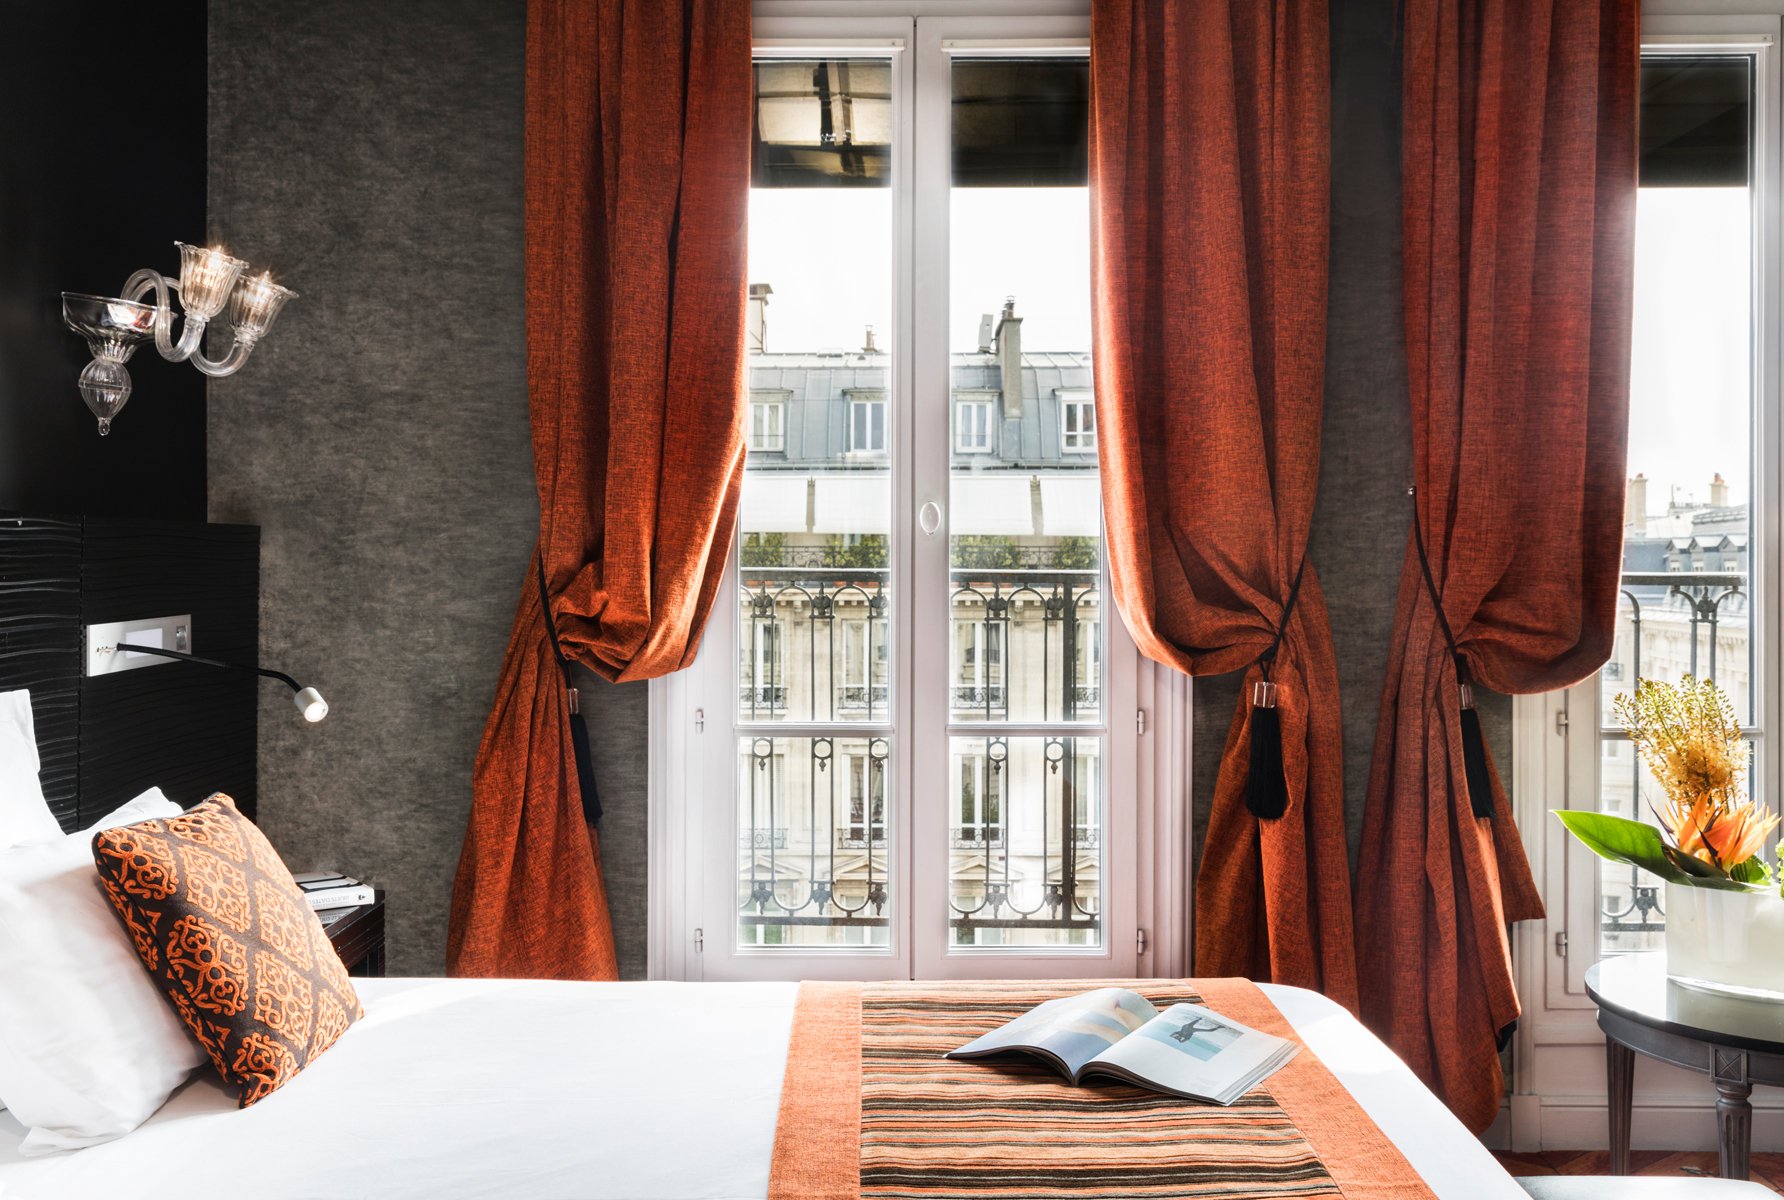 Maison Albar Hotels Le Champs-Elysées executive room